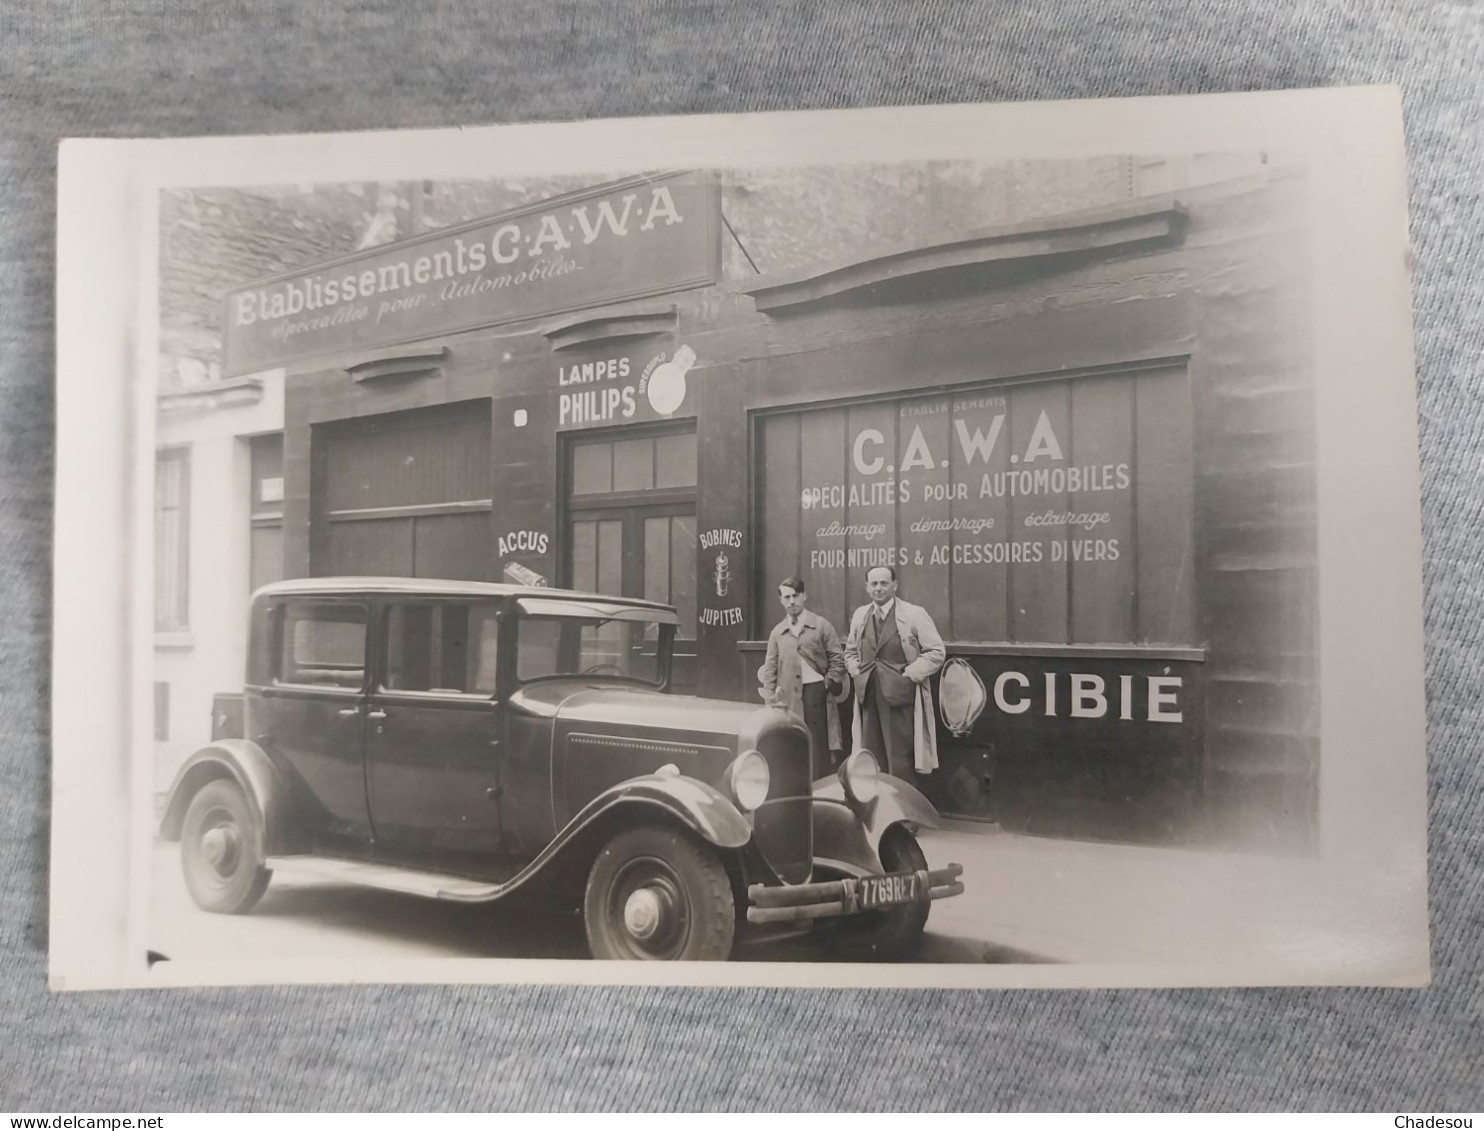 Citroën établissement C.A.W.A Automobile Cars - Collections & Lots